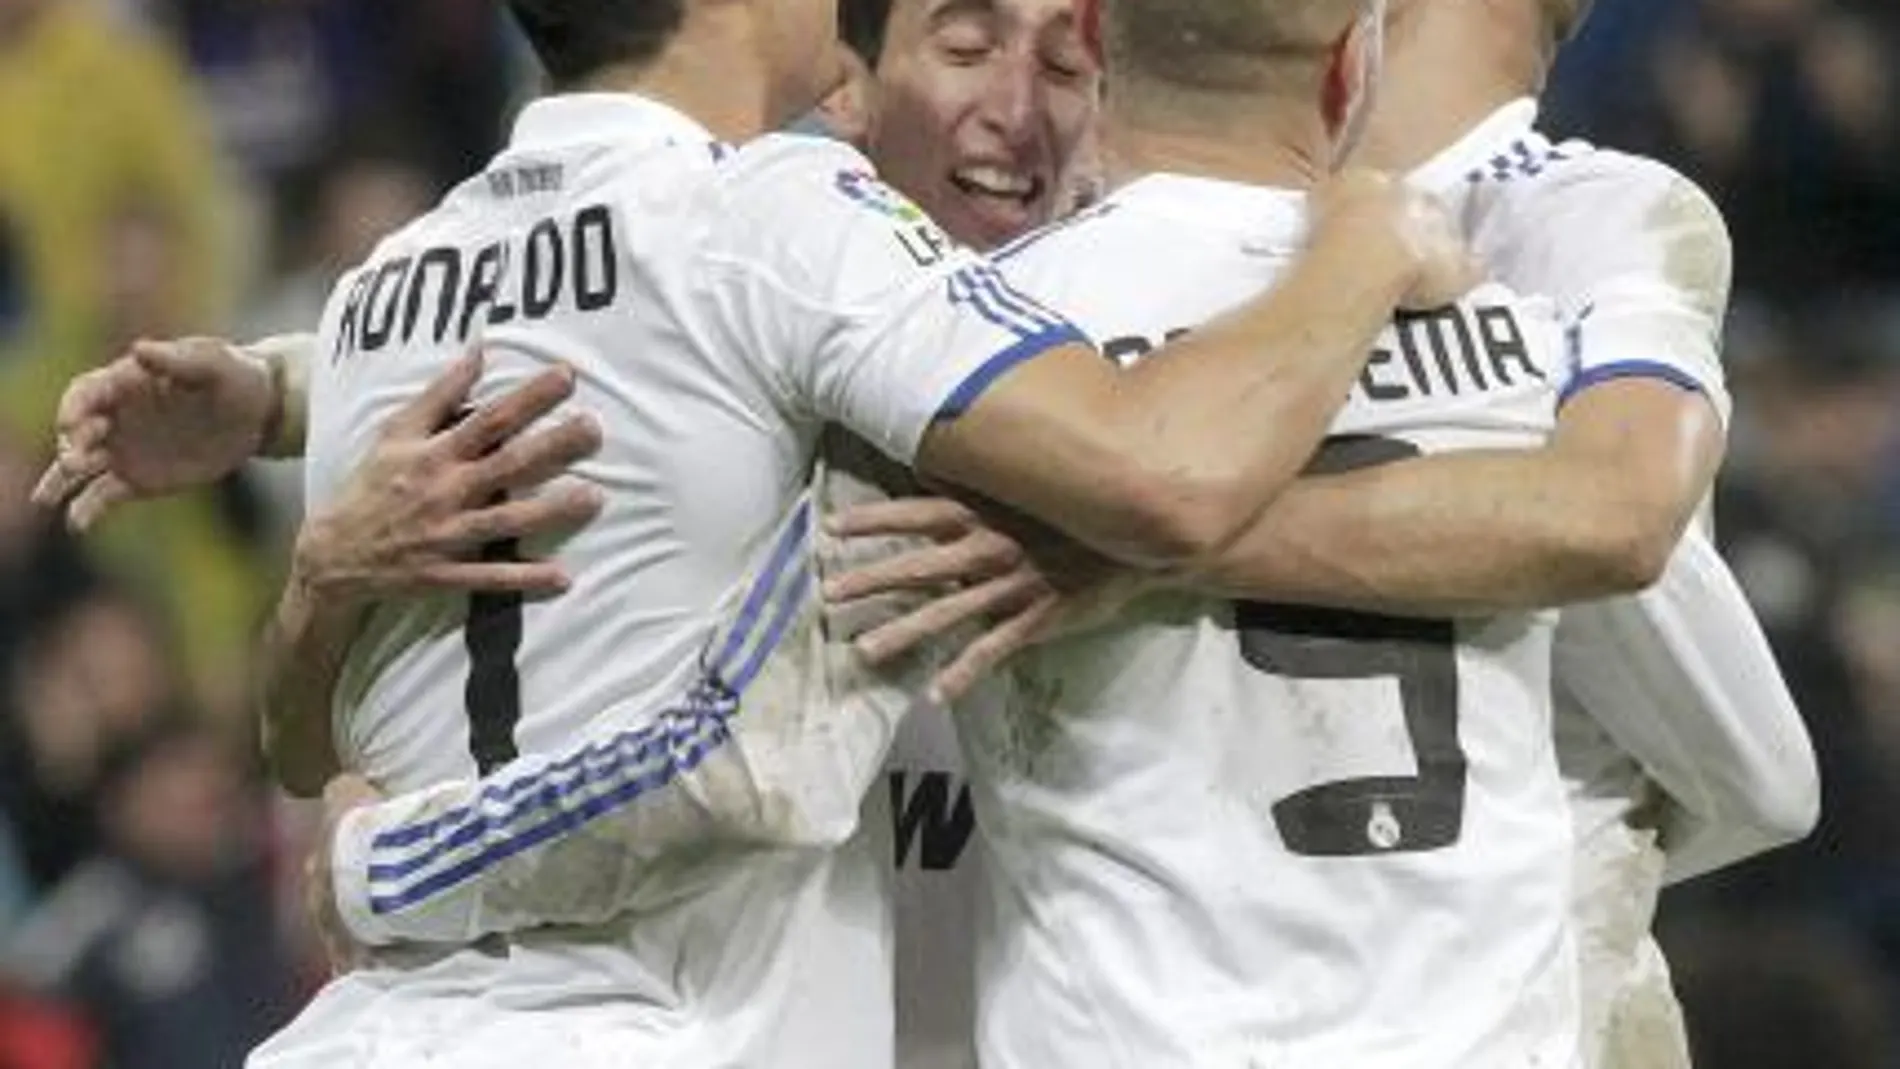 Los jugadores del Real Madrid (i-d) Cristiano Ronaldo, Di María, Benzema y Pepe celebran uno de los goles ante el Levante